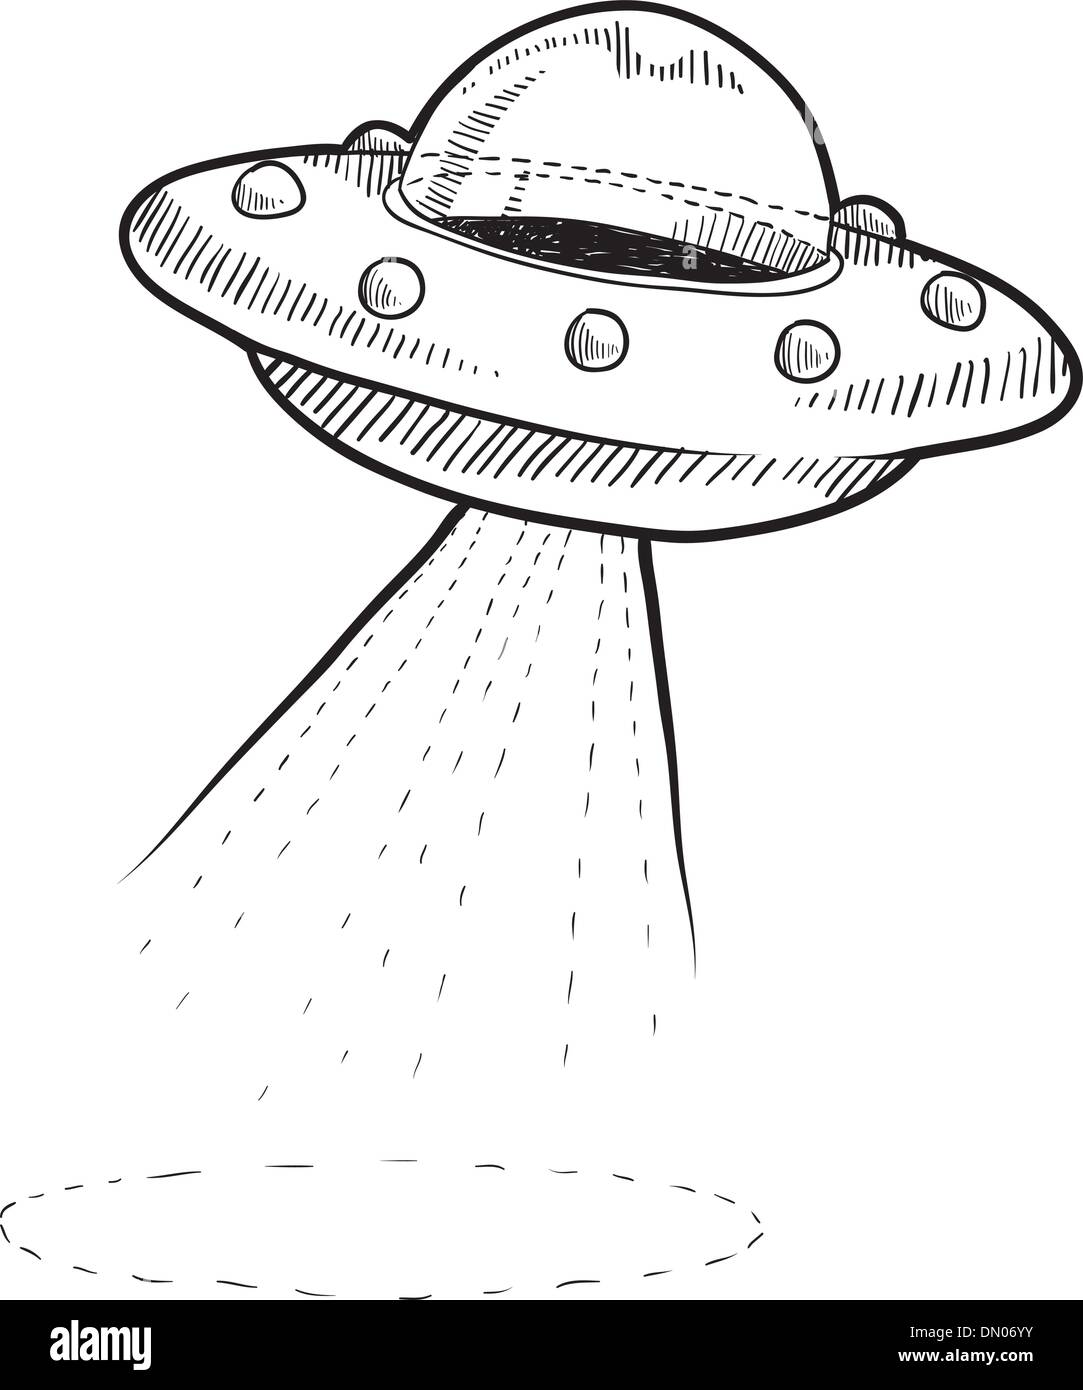 Retrò Alien UFO schizzo Illustrazione Vettoriale